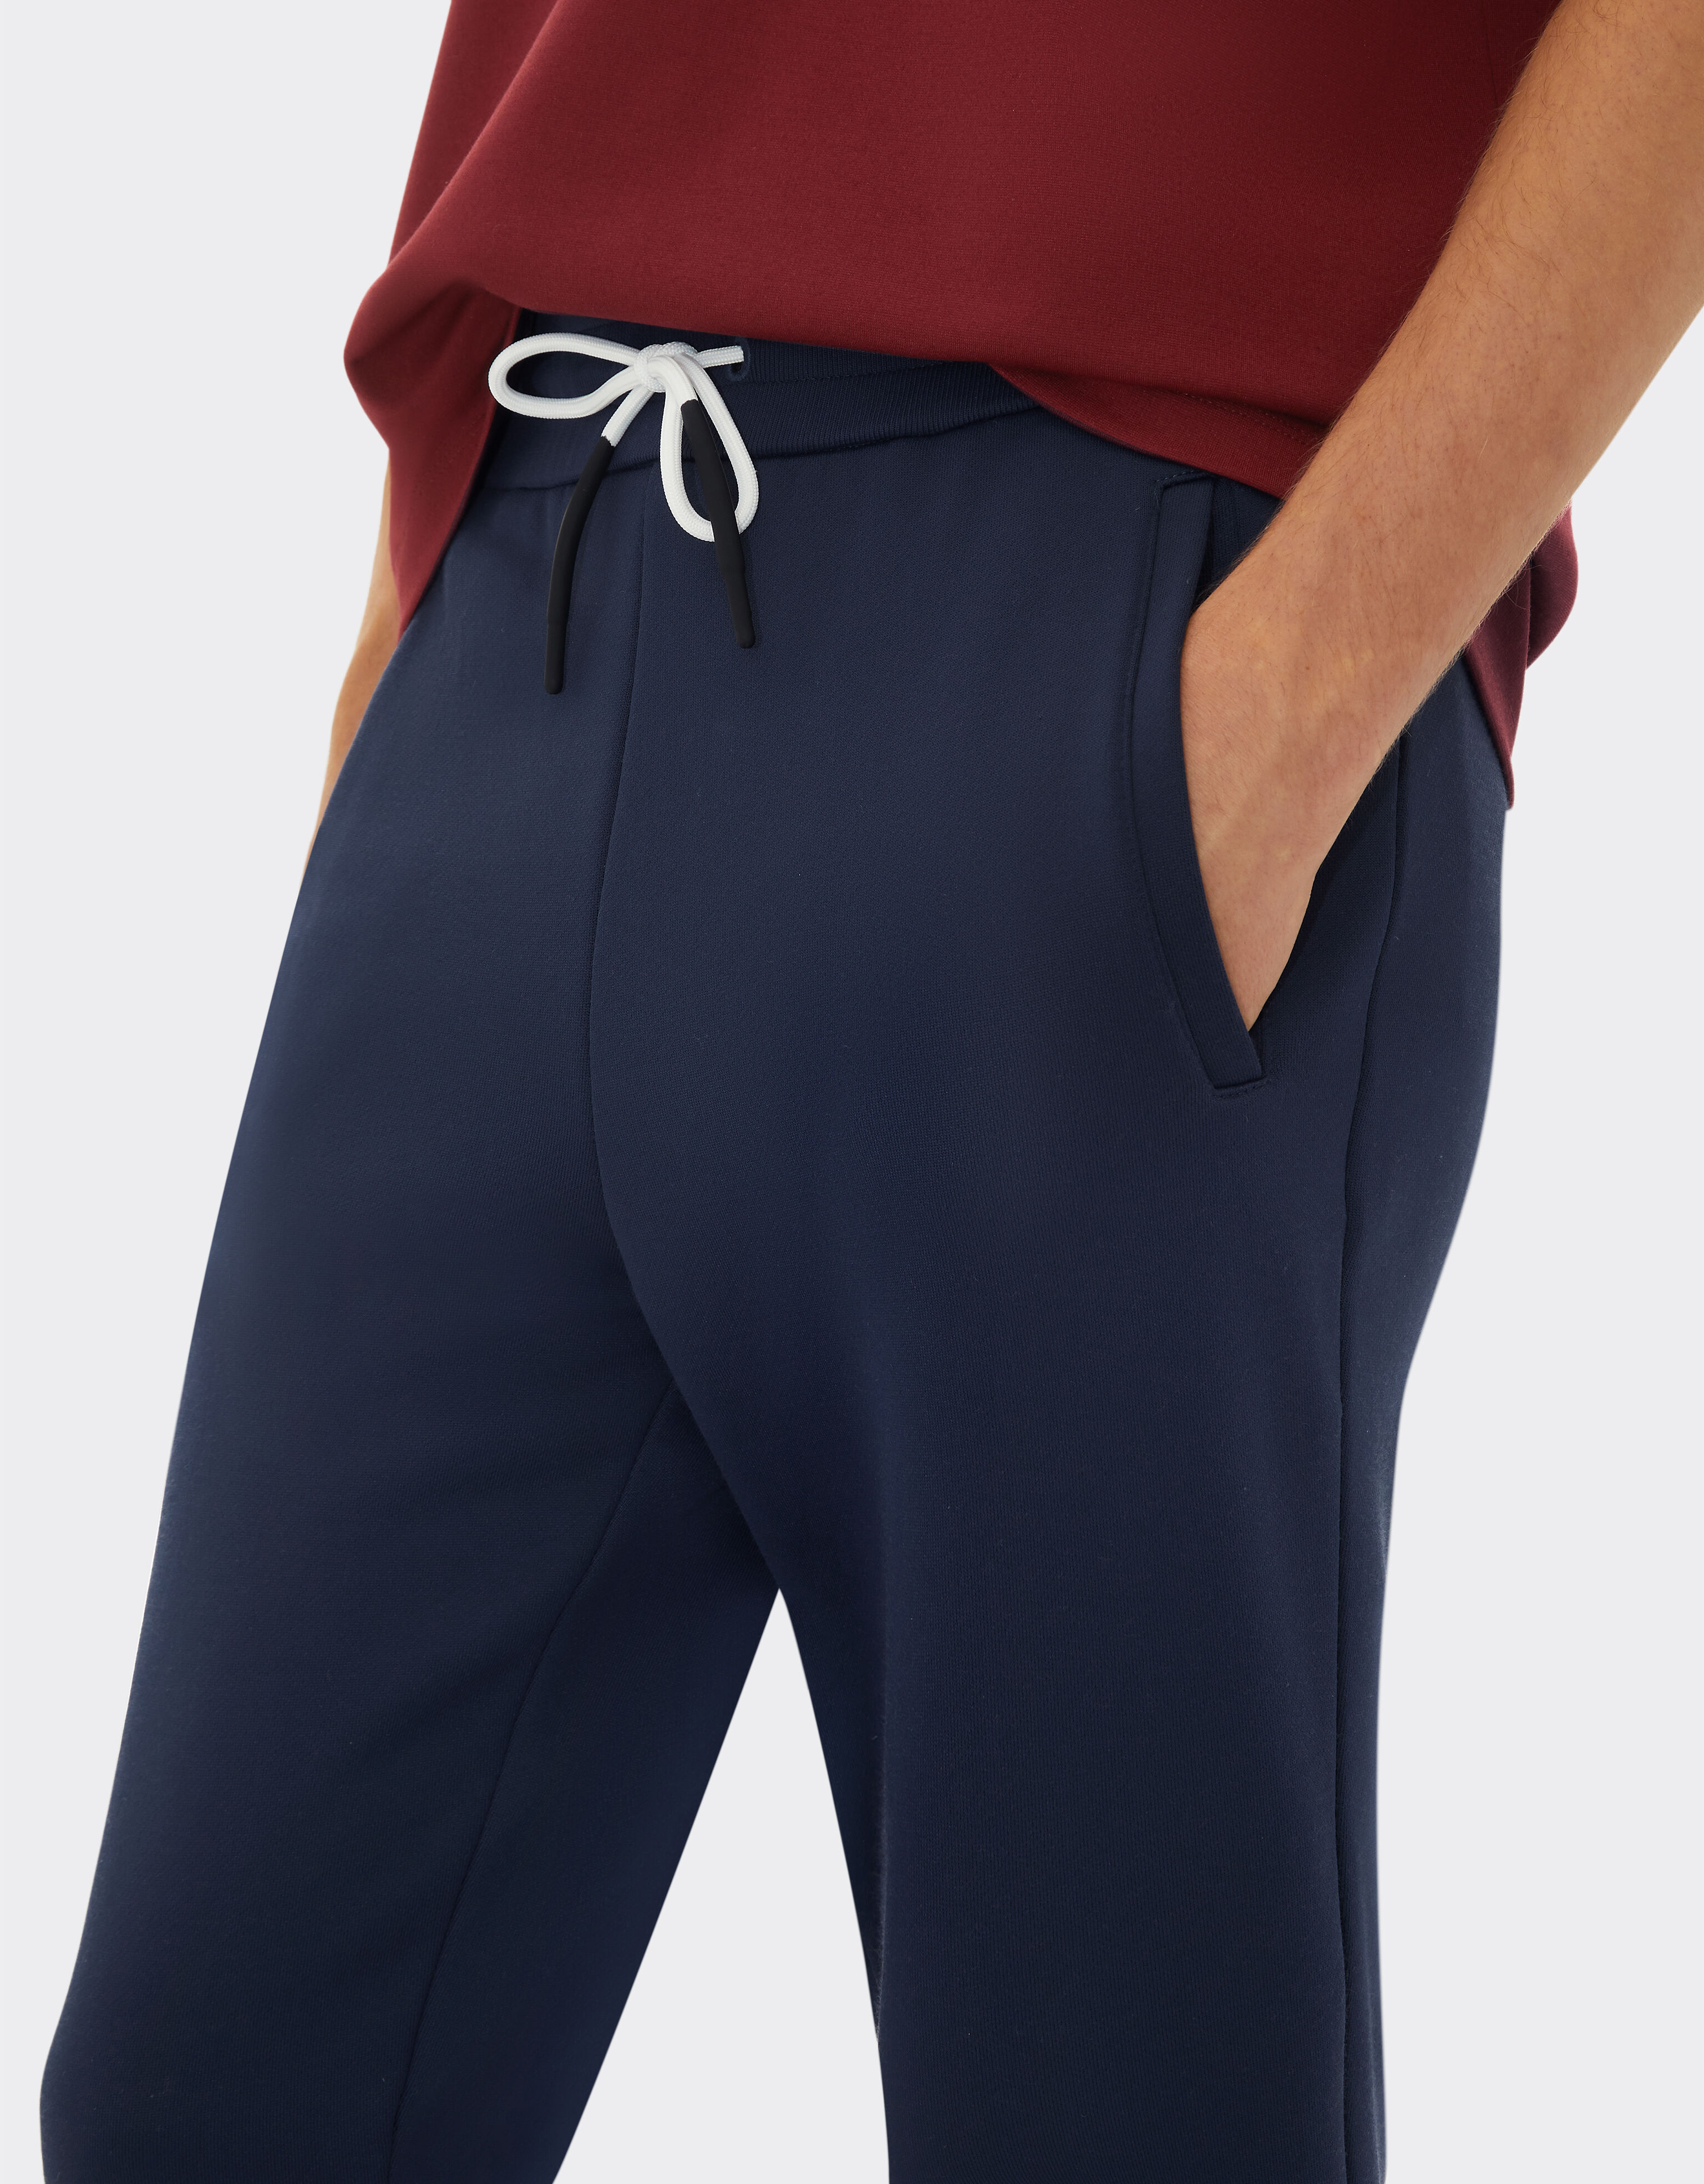 Ferrari Pantalon de jogging en coton mélangé Bleu marine 20546f